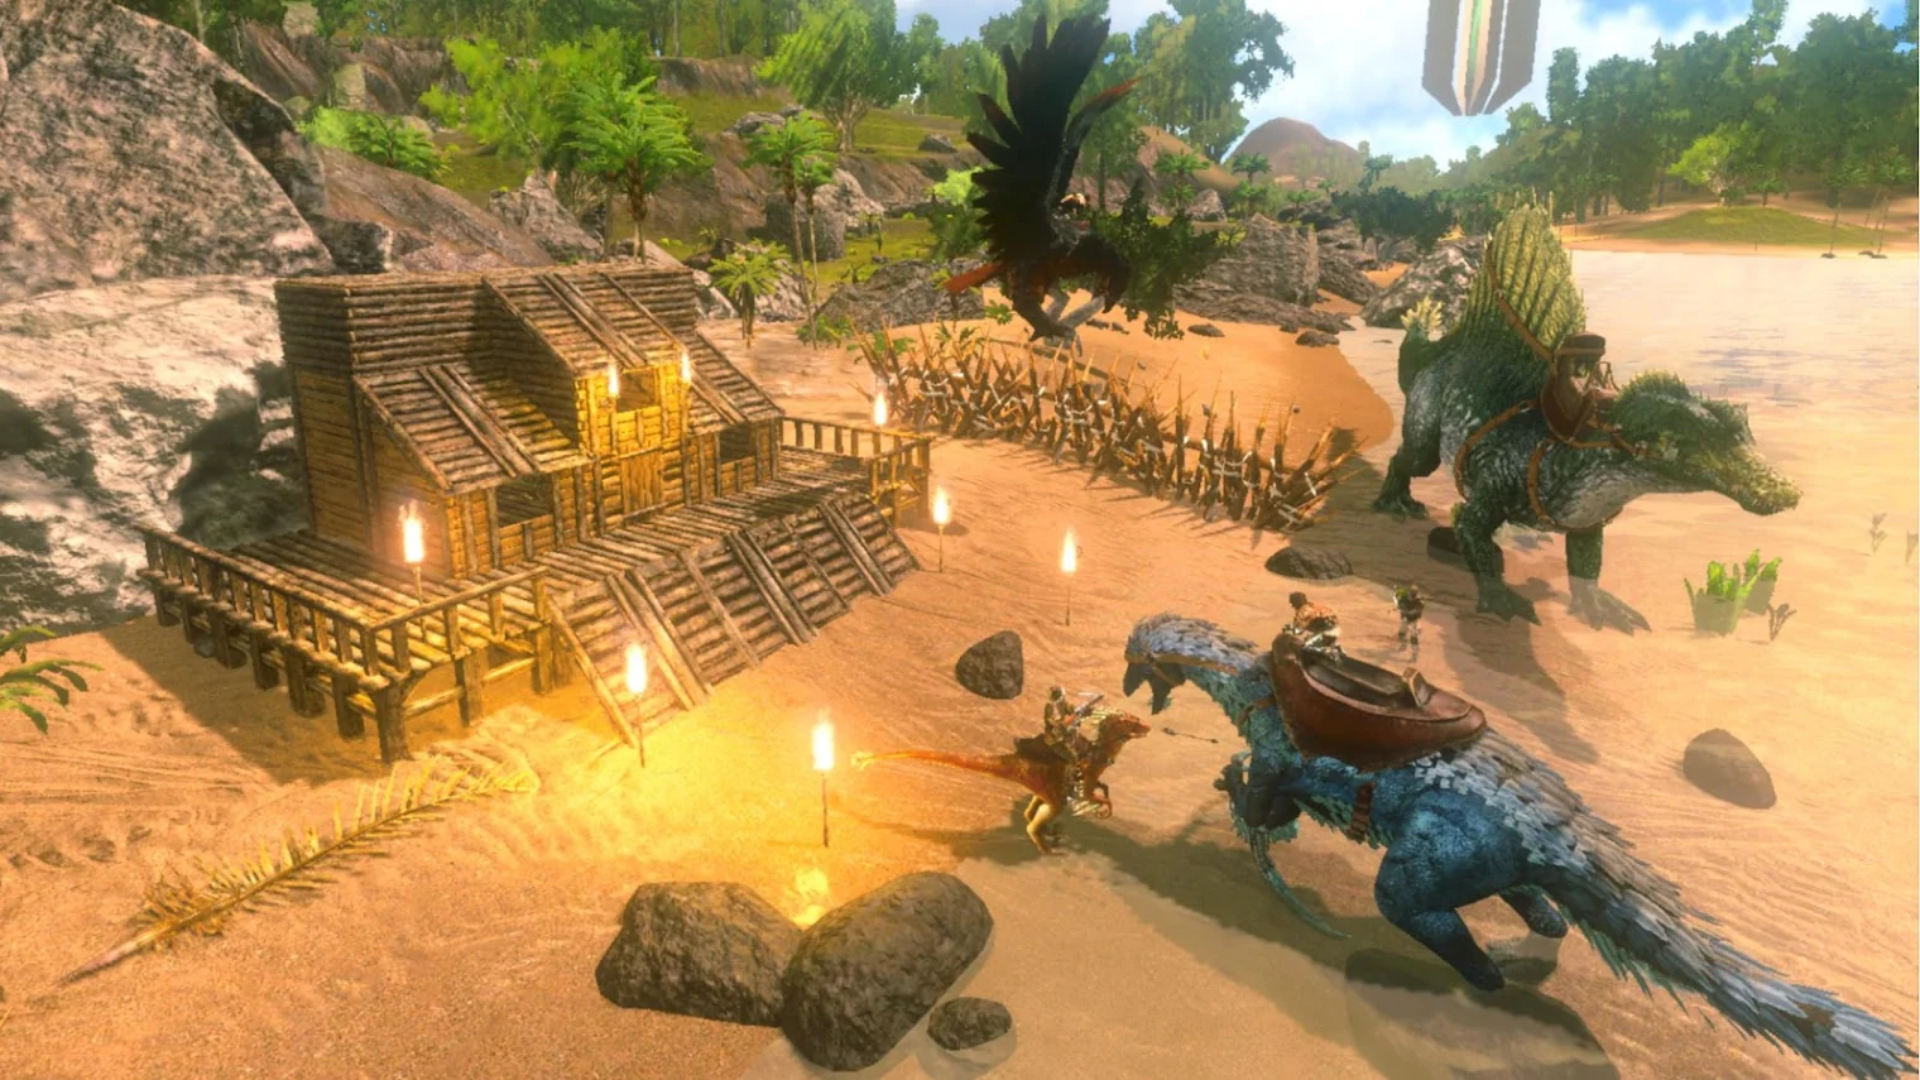 Permainan Survival Terbaik di Mobile: Ark: Survival Evolved. Imej menunjukkan dinosaur berhampiran rumah yang sedang dibina